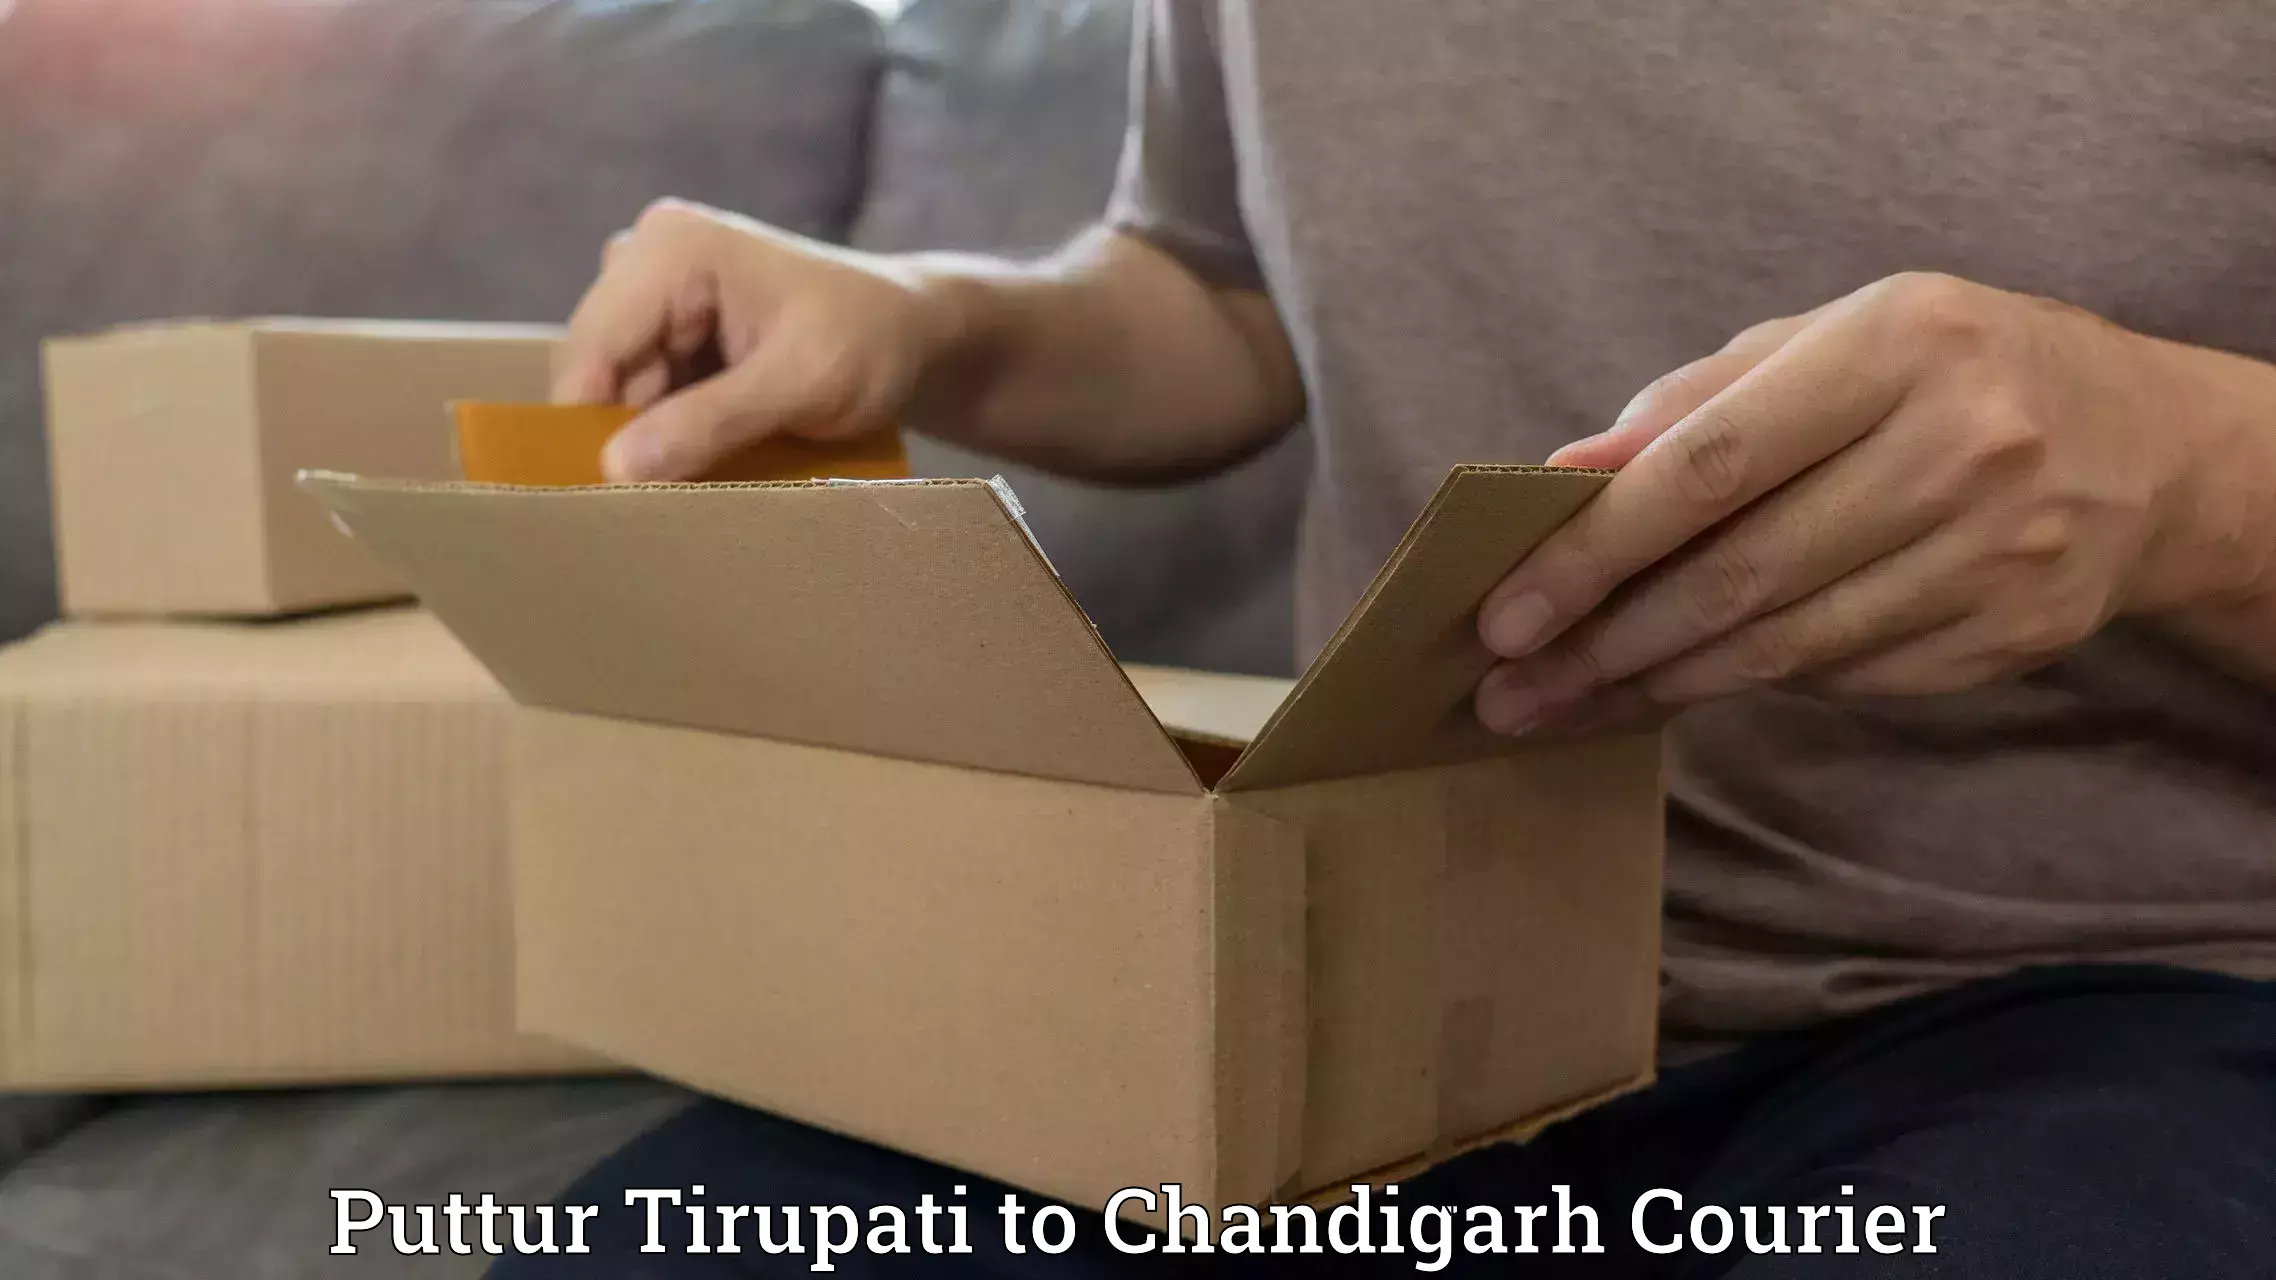 International courier networks Puttur Tirupati to Chandigarh